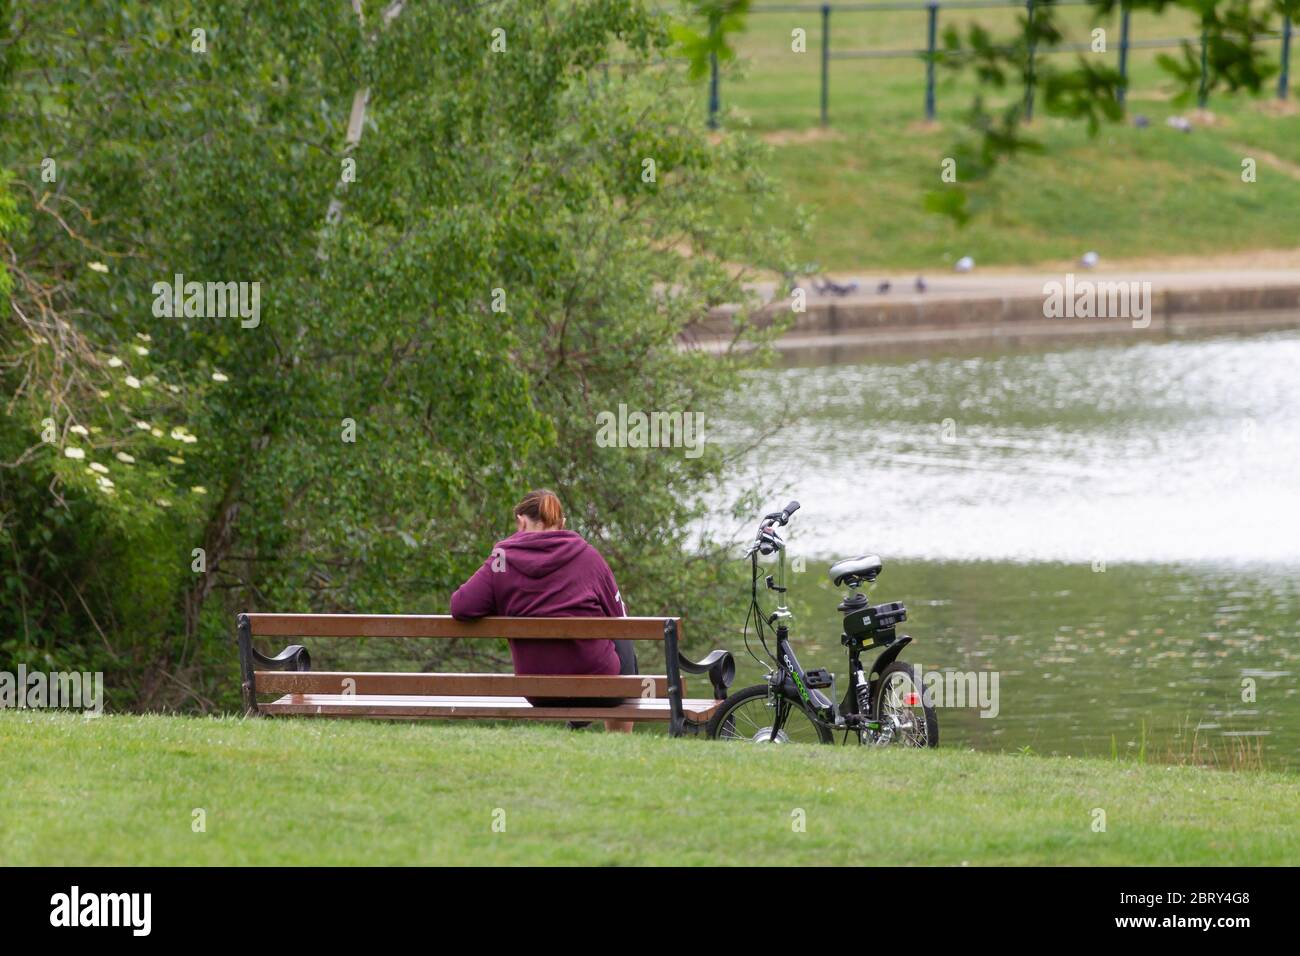 ECO-Stepper E-bike sur le stand tandis que le motard féminin est assis sur un banc de parc à Abington Park, Northampton, Angleterre, Royaume-Uni. Banque D'Images